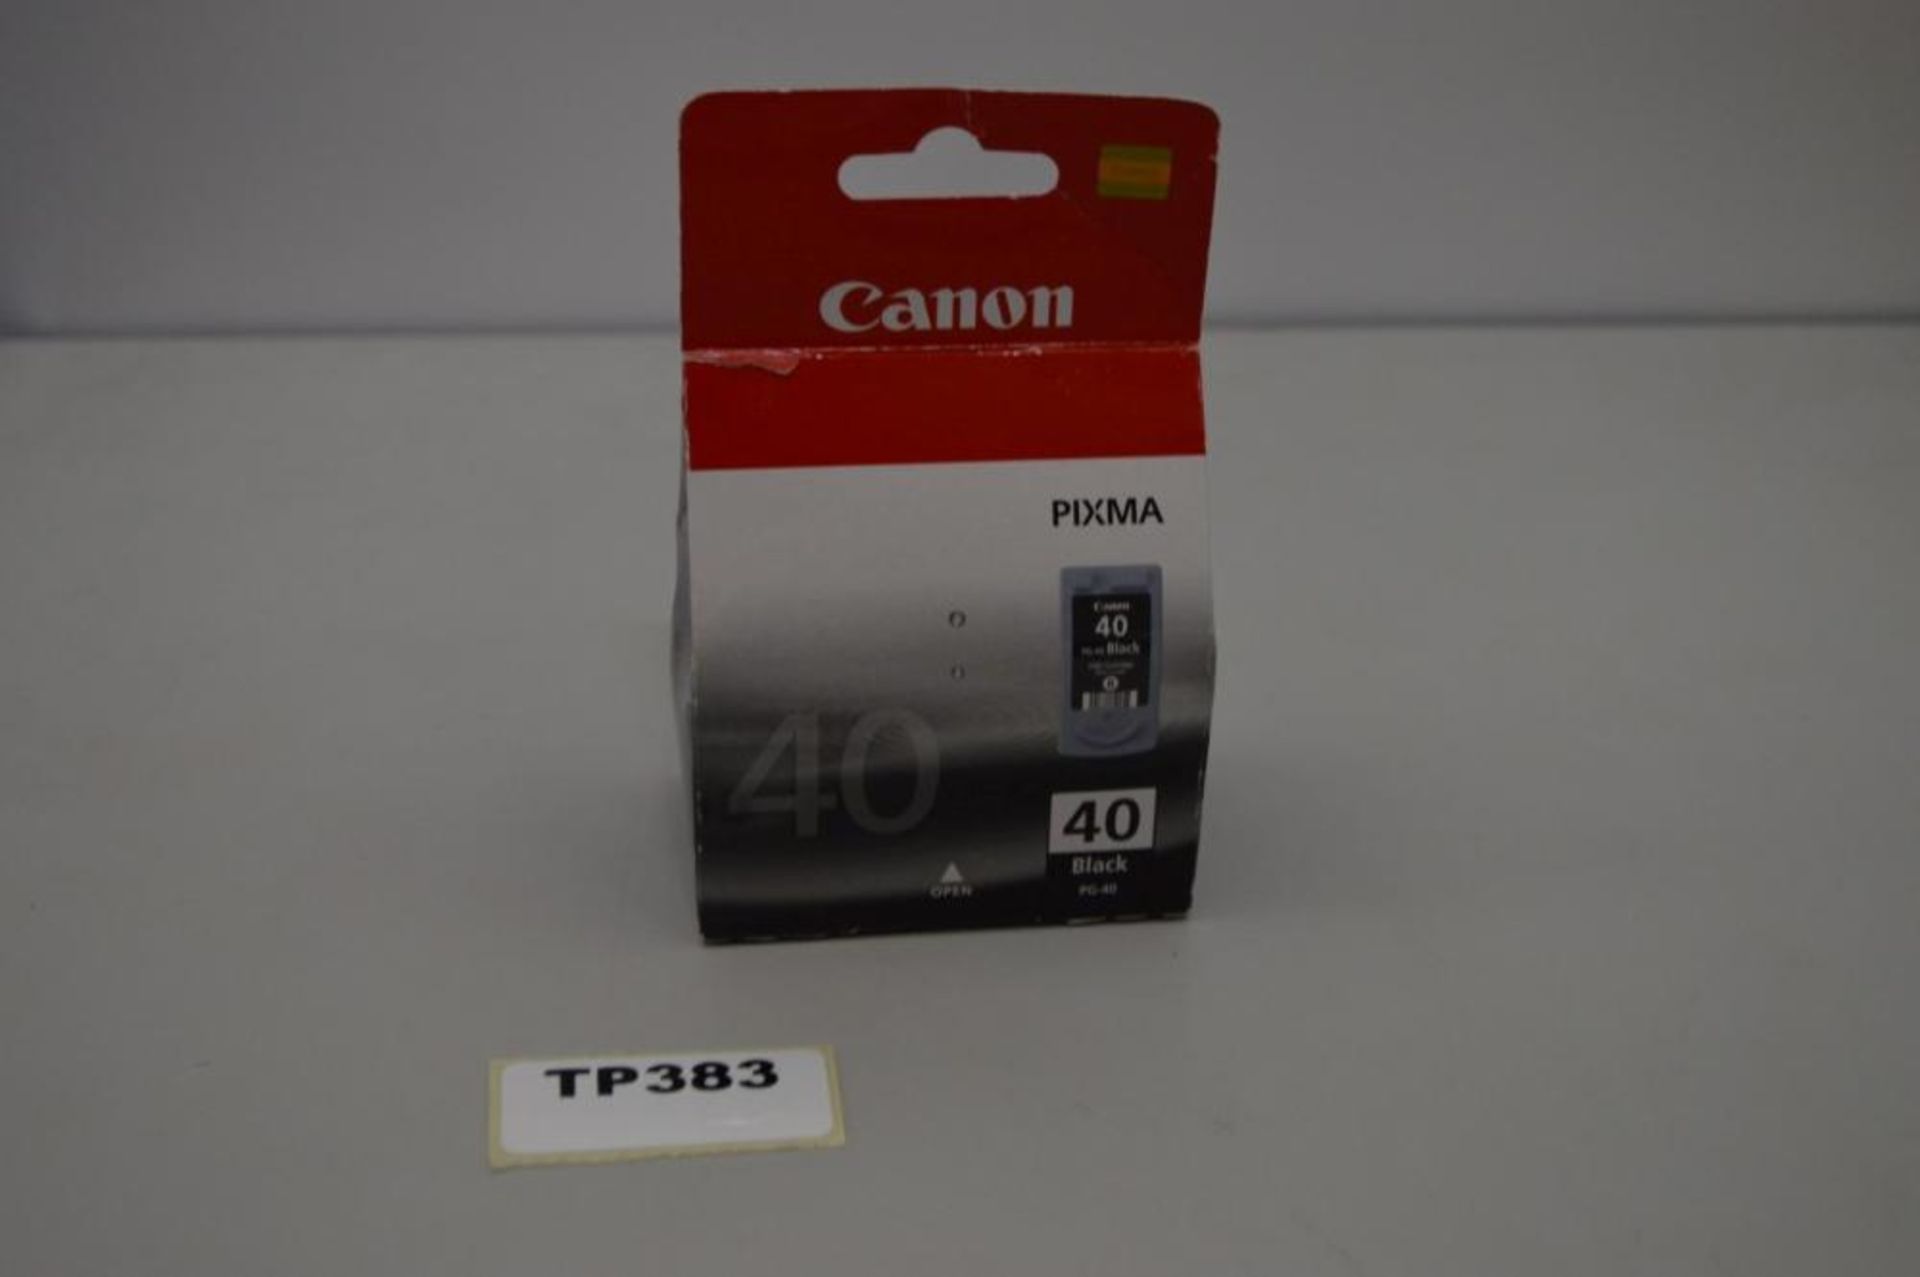 1 x Canon 40 Black Printer Ink Cartridge New In Box - Ref TP383 - CL394 - Location: Altrincham WA14